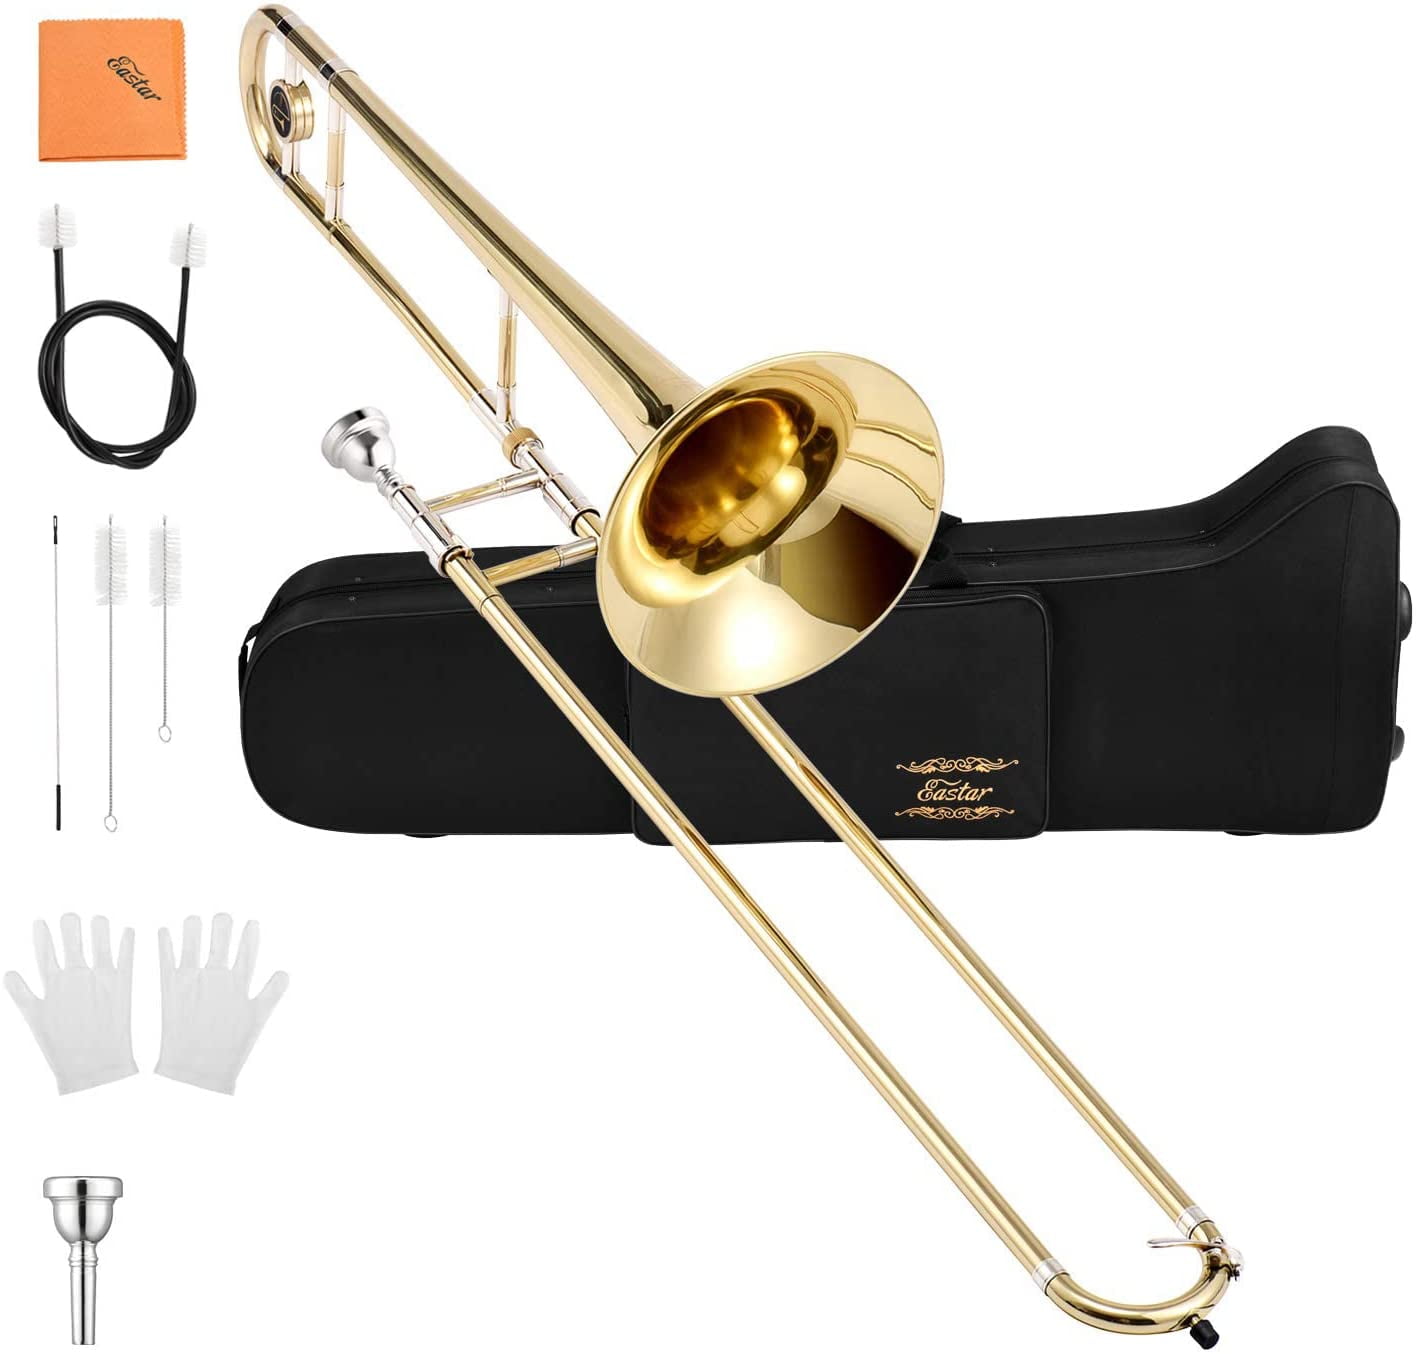 Best beginner student trombone easy to play light pBone free case & 